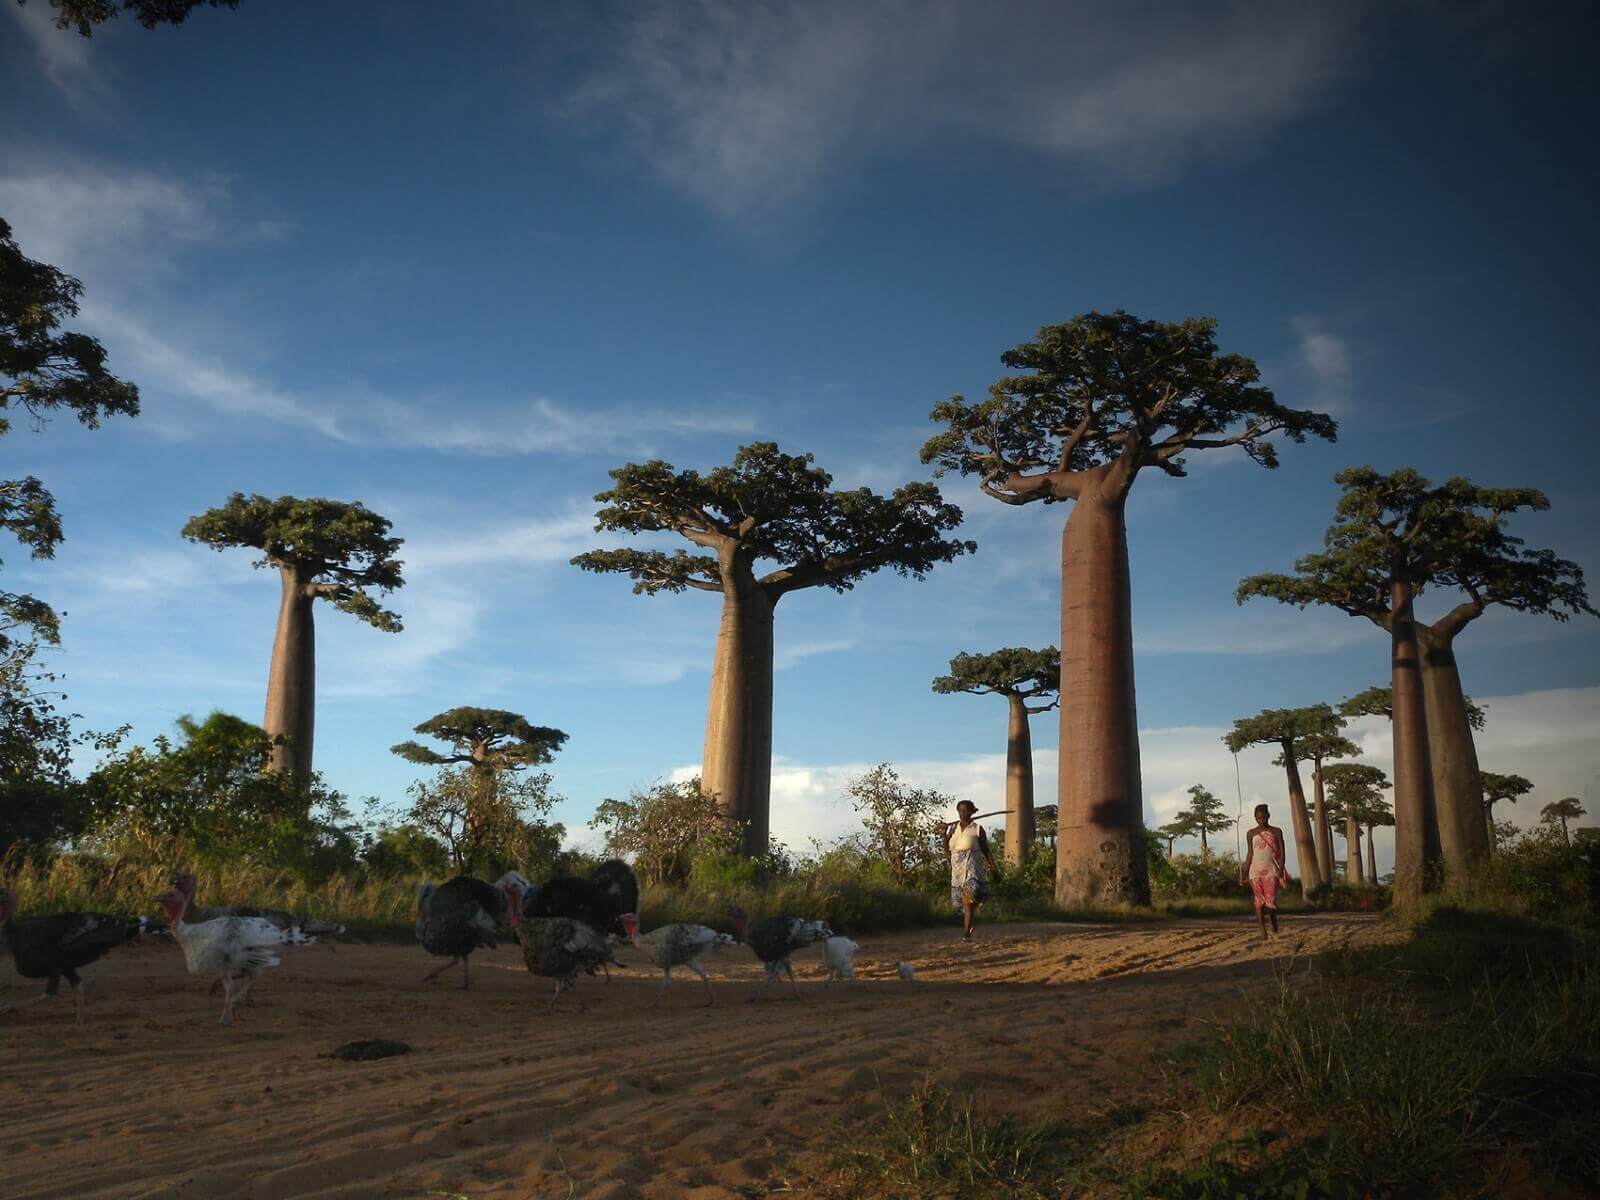 Vassen,Frank-Madagaskar-Baobabsalley (2) - 